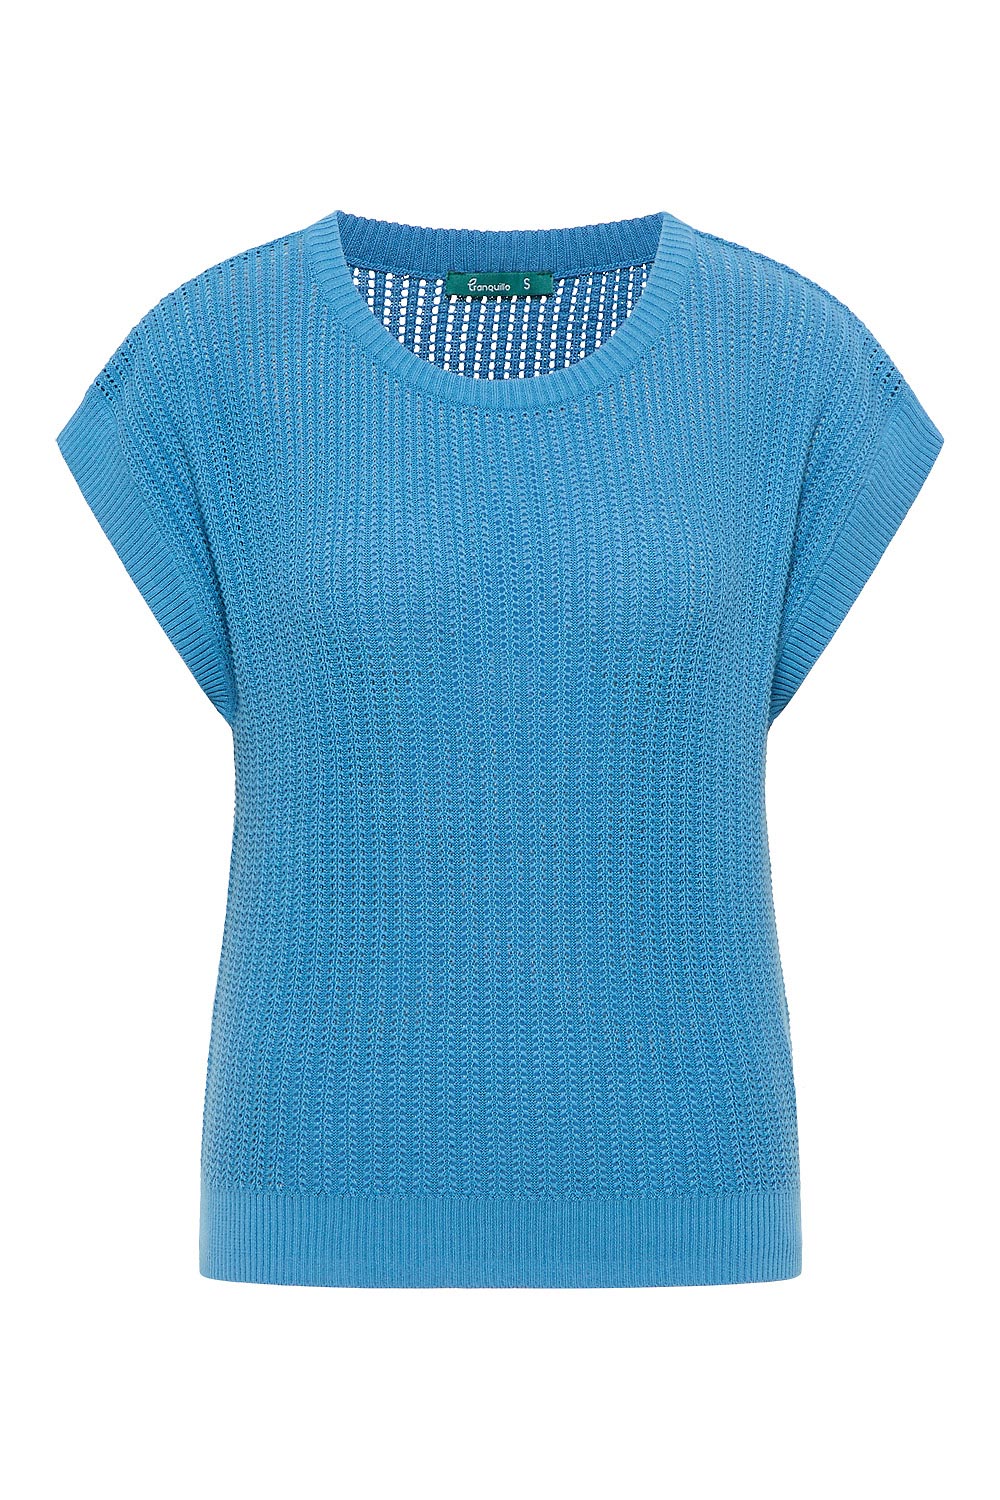 Shirt Strick 62 blue